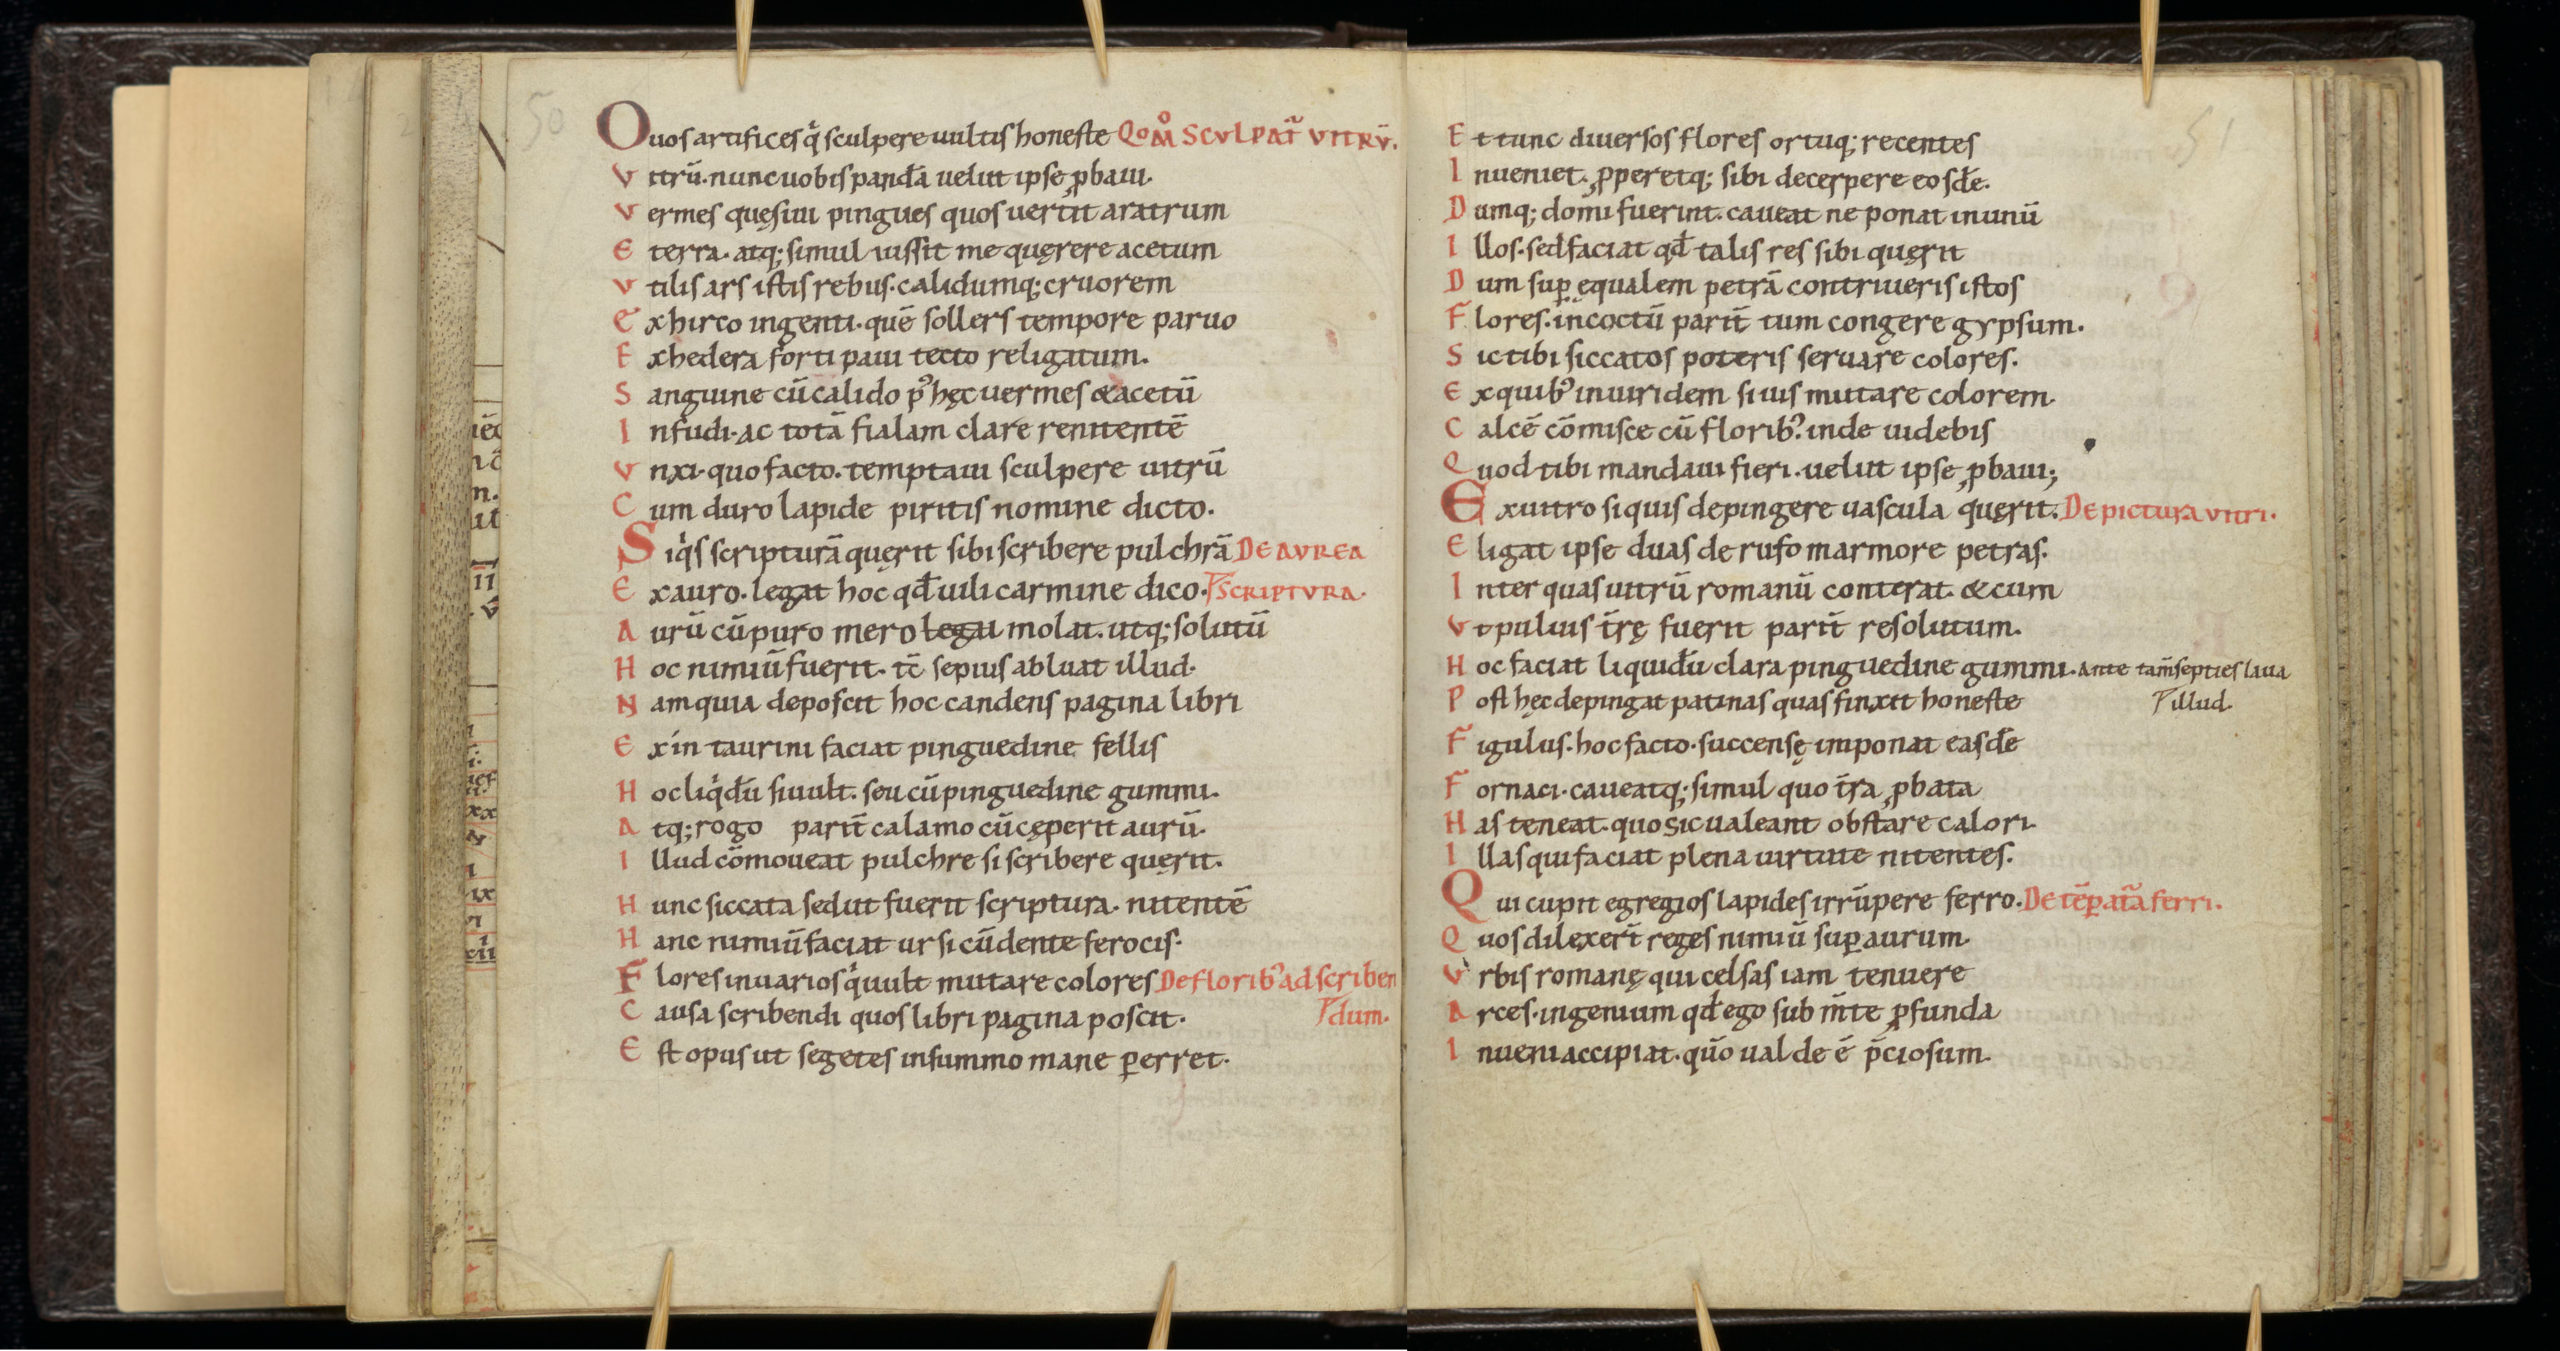 Eraclius, De coloribus (pages 50-51)